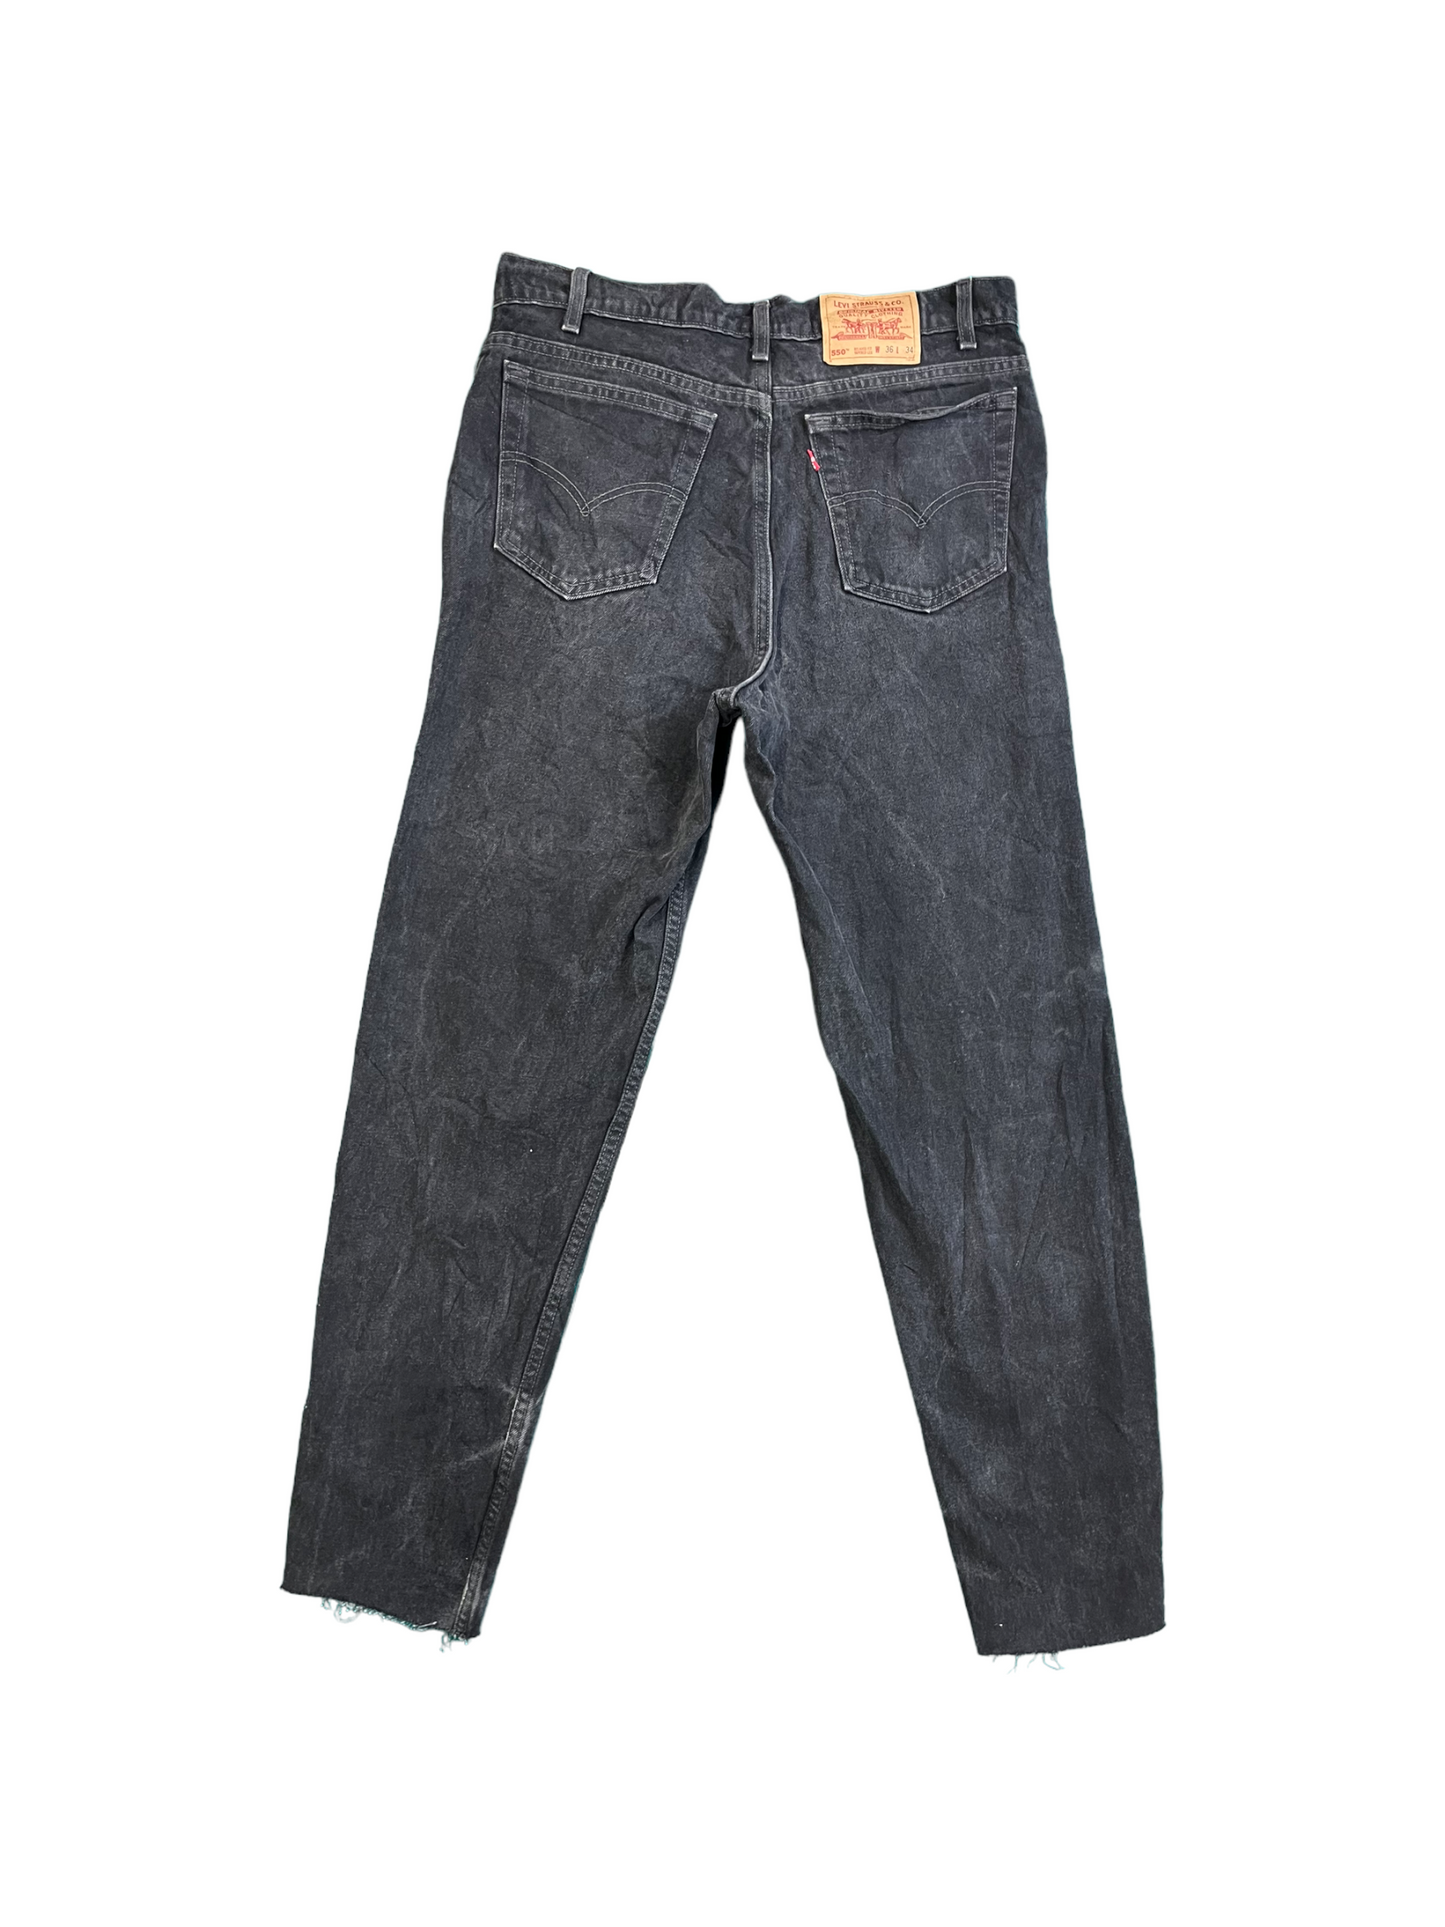 Mens Levis Black 550 Jeans - Waist 36" Length 34"